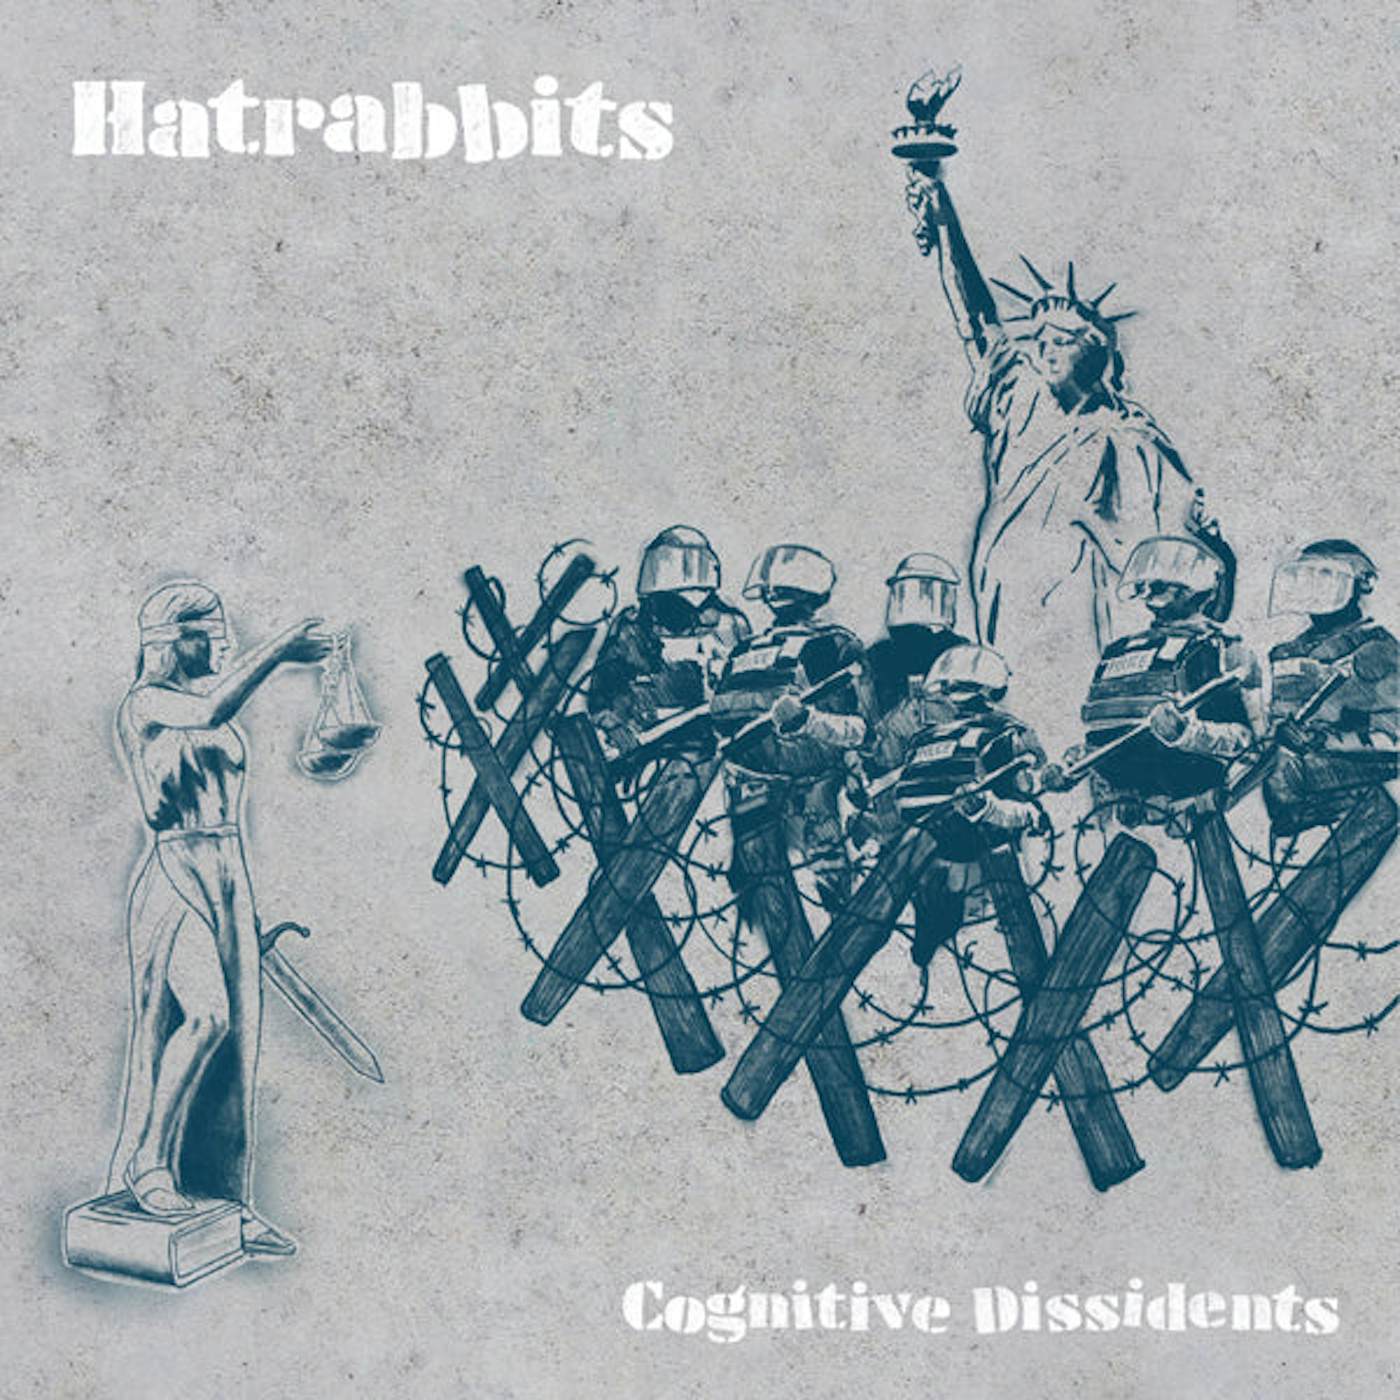 Hatrabbits LP - Cognitive Dissidents (2lp) (Vinyl)